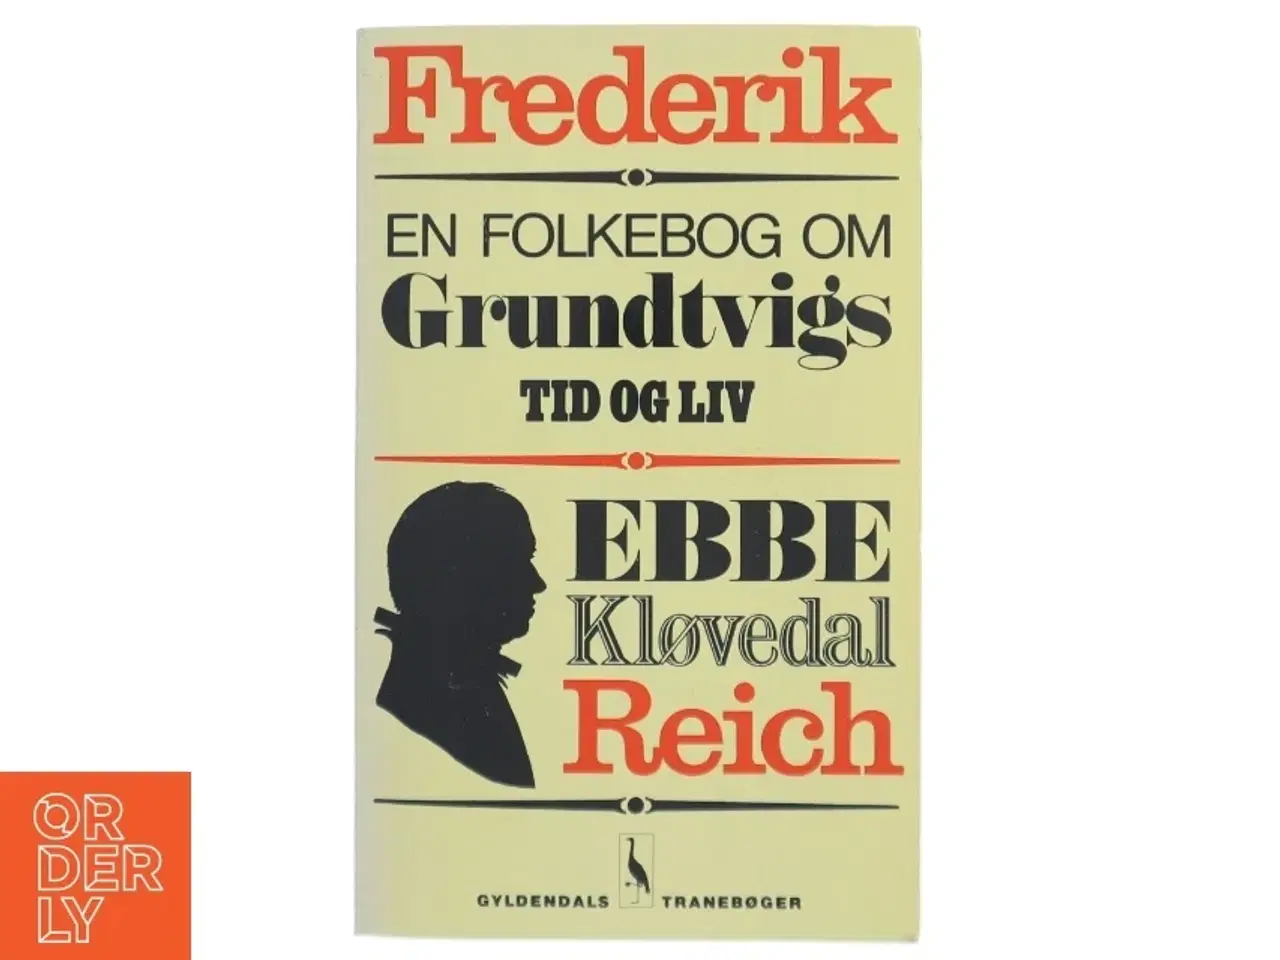 Billede 1 - Frederik - En Folkebog om Grundtvigs Tid og Liv af Ebbe Kløvedal Reich (bog) fra Gyldendals Tranebøger